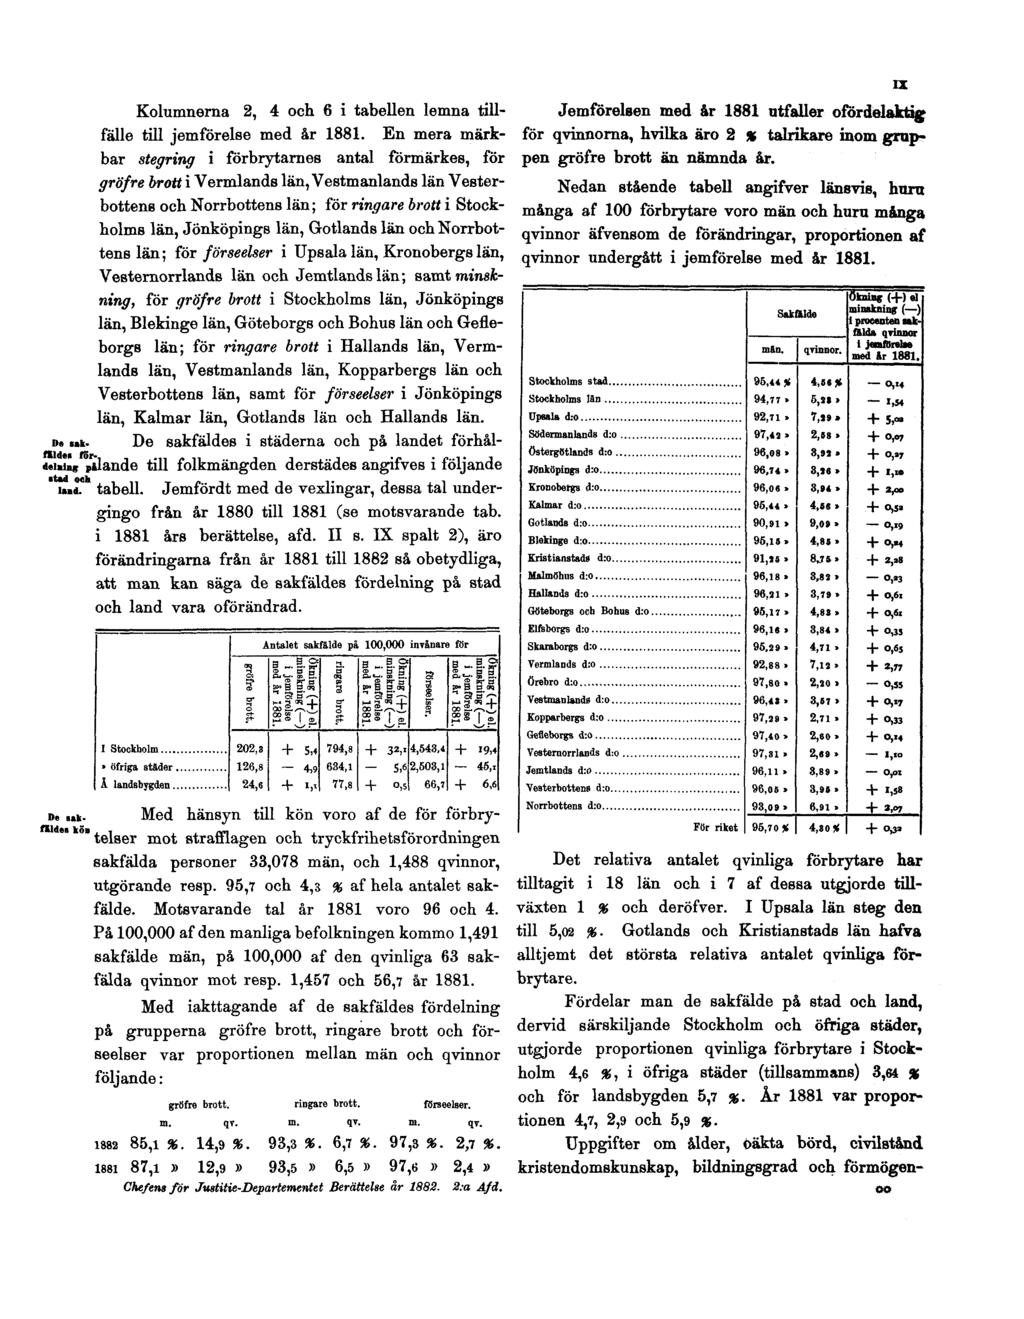 De sakfälden fördelning ståd och land. Kolumnerna 2, 4 och 6 i tabellen lemna tillfälle till jemförelse med år 1881.